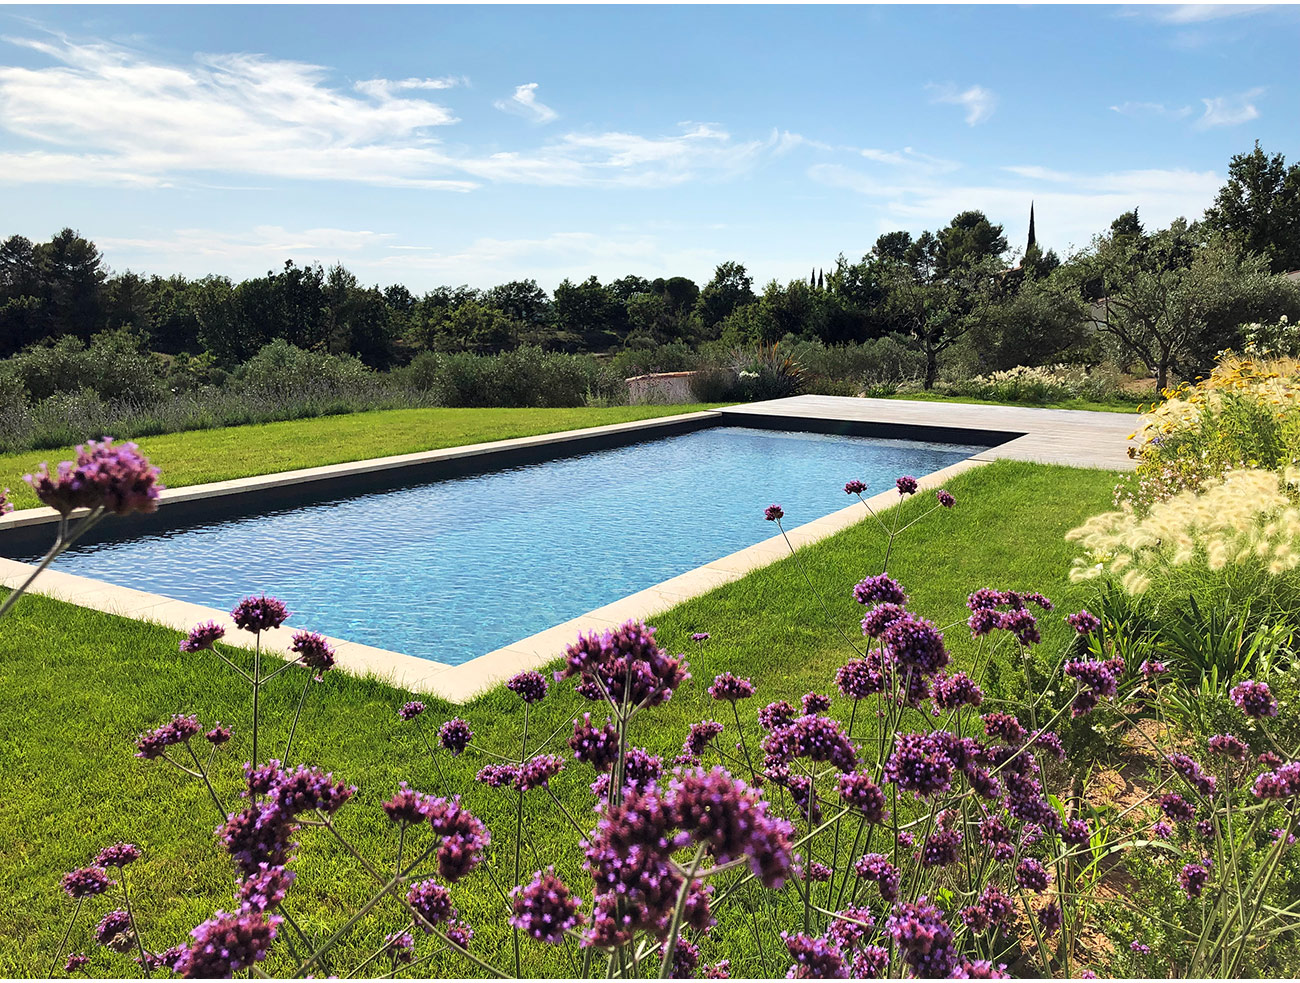 Atelier Naudier - Architecte paysagiste concepteur - Montpellier & Aix en Provence - Jardin méditerranéen et piscine